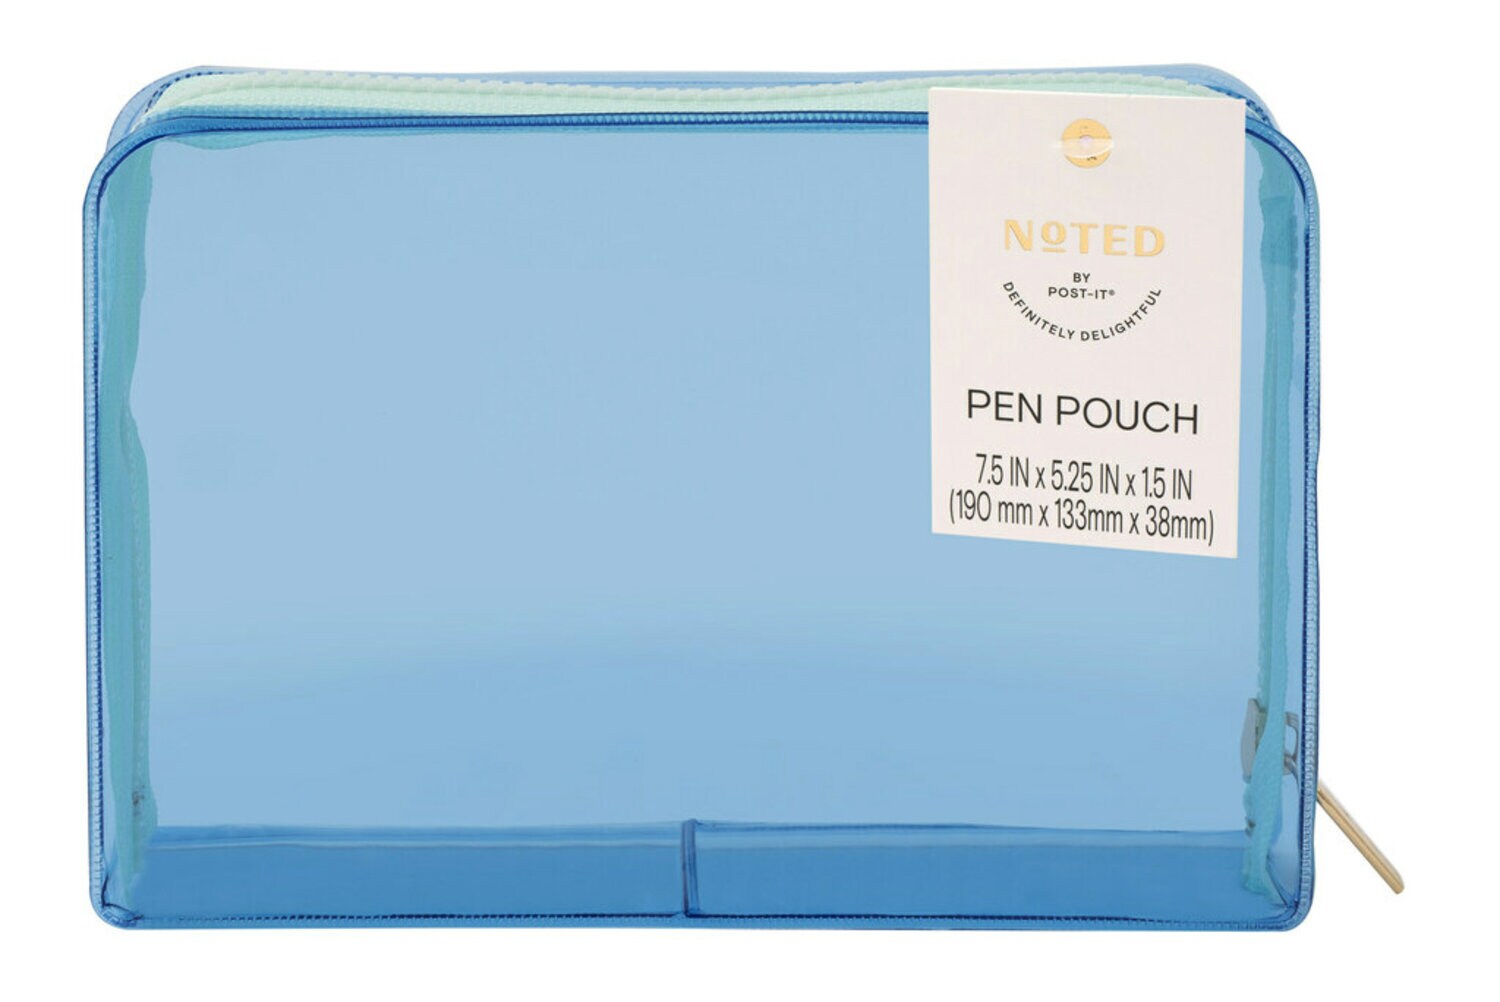 7100290529 - Post-it Pen Pouch NTDW-PP-2, One Pen Pouch